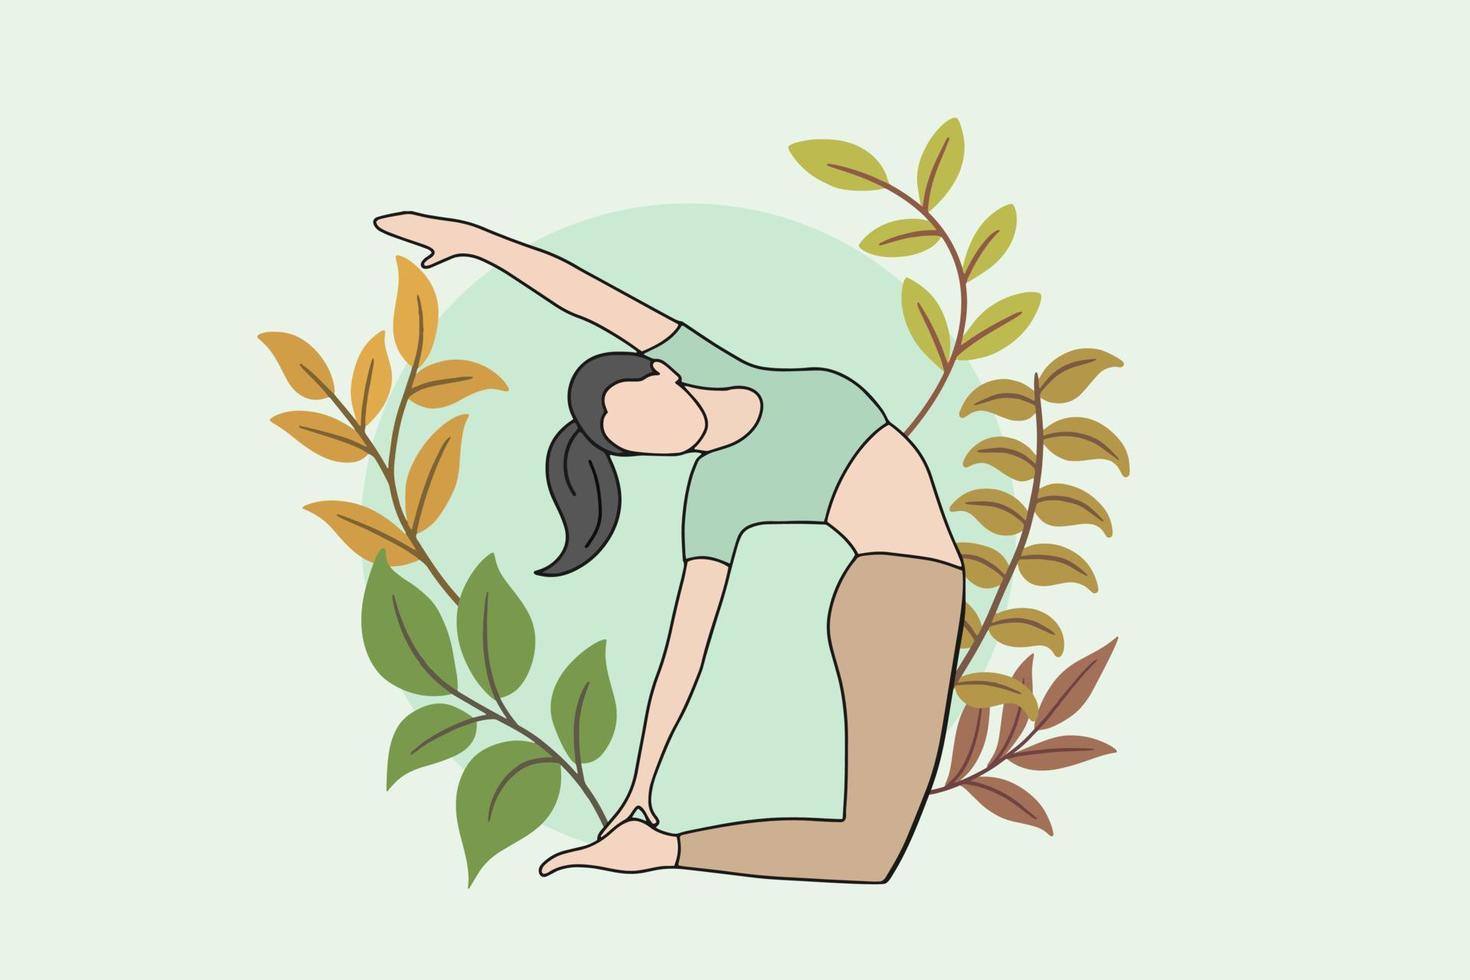 donna che medita nell'illustrazione pacifica della natura, concetto di yoga e stile di vita sano, design piatto del fumetto vettore